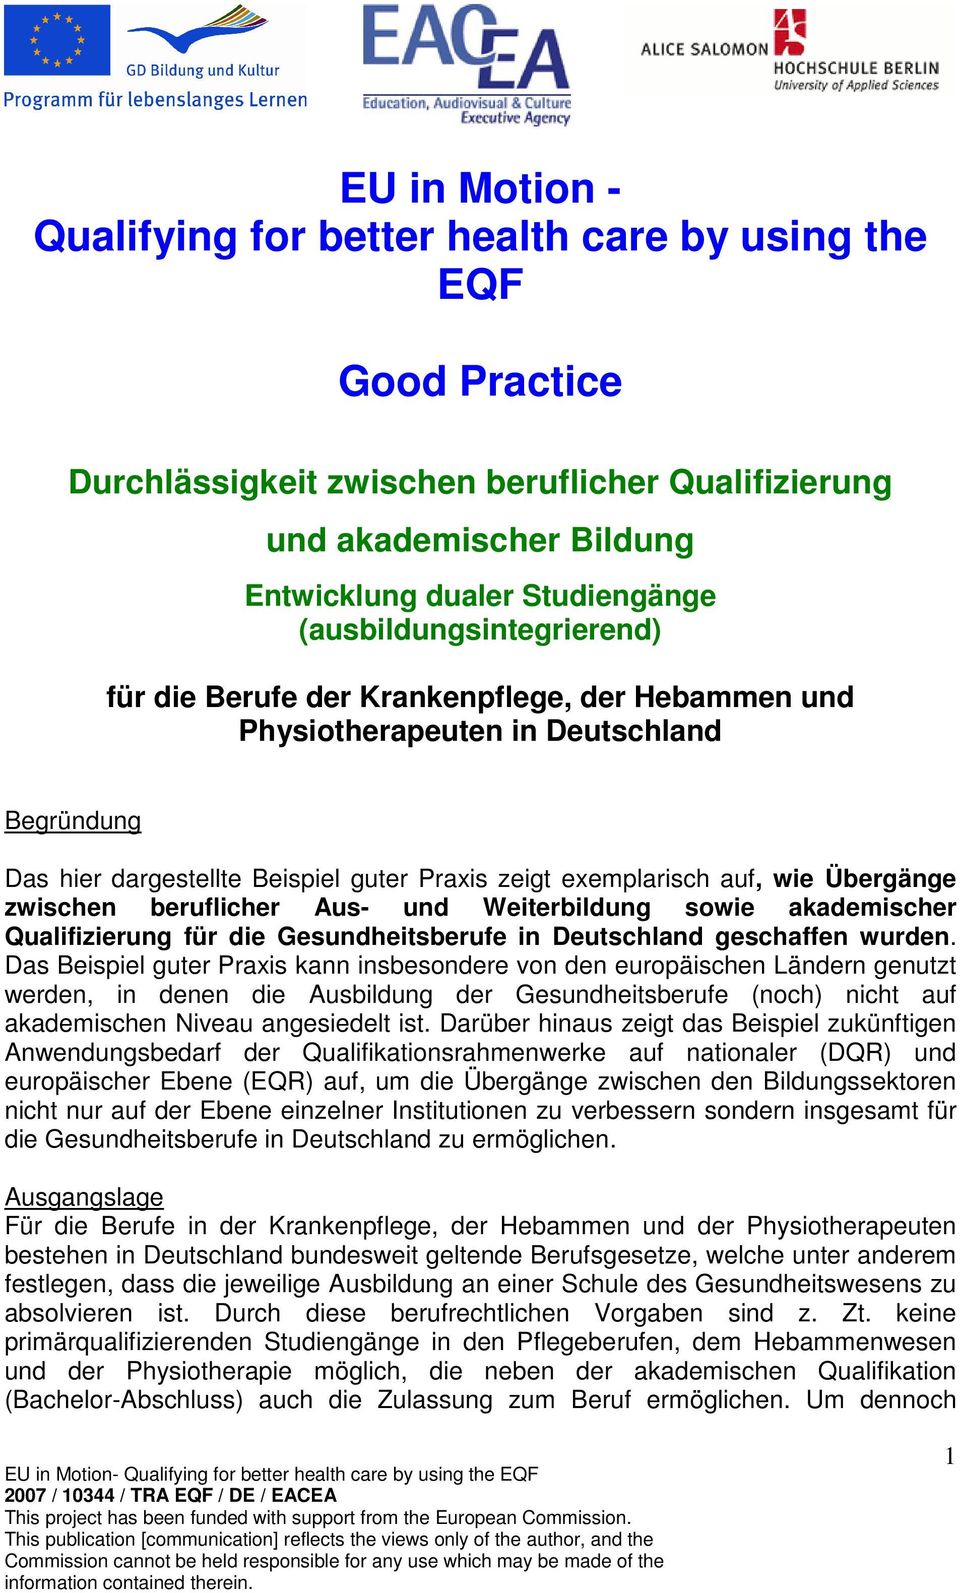 Übergänge zwischen beruflicher Aus- und Weiterbildung sowie akademischer Qualifizierung für die Gesundheitsberufe in Deutschland geschaffen wurden.